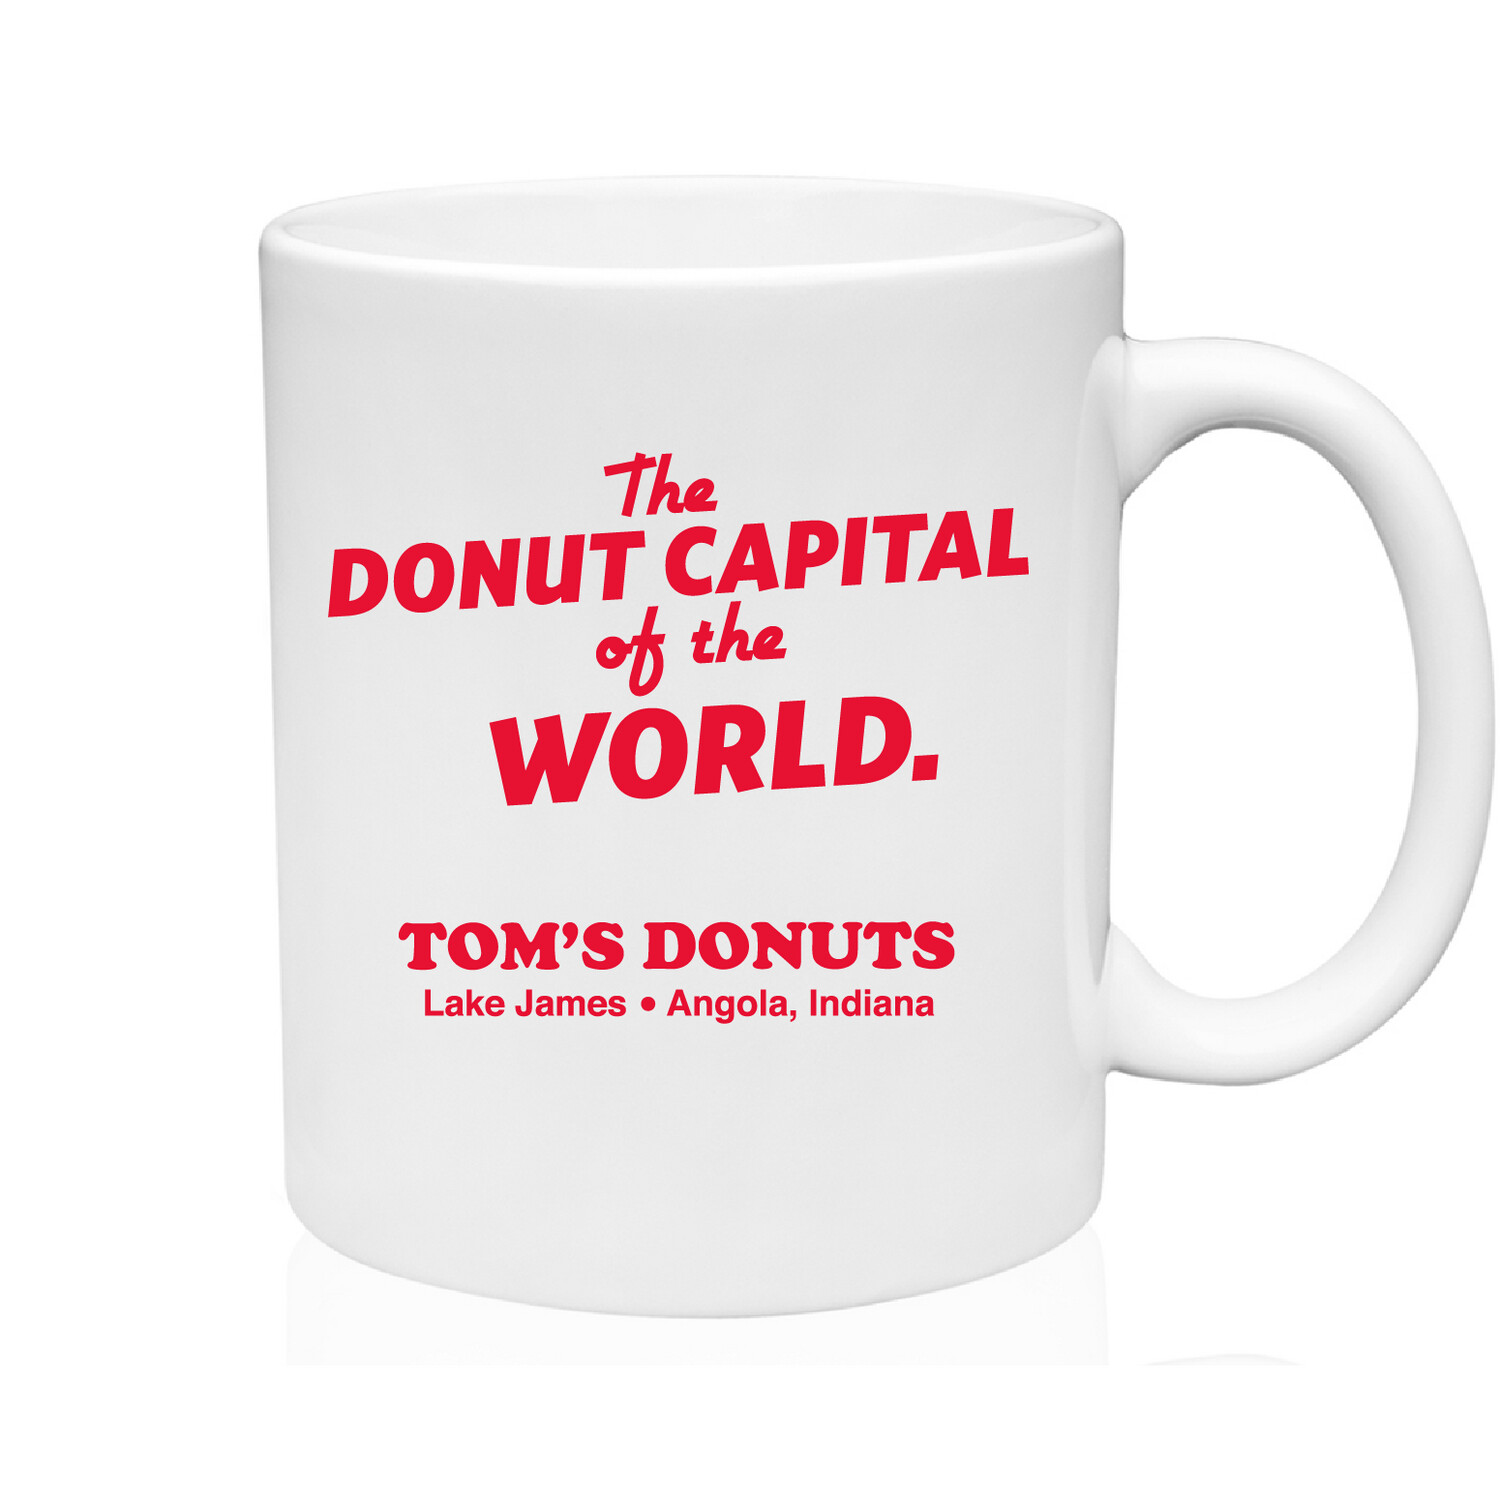 Tom's Donuts Mug